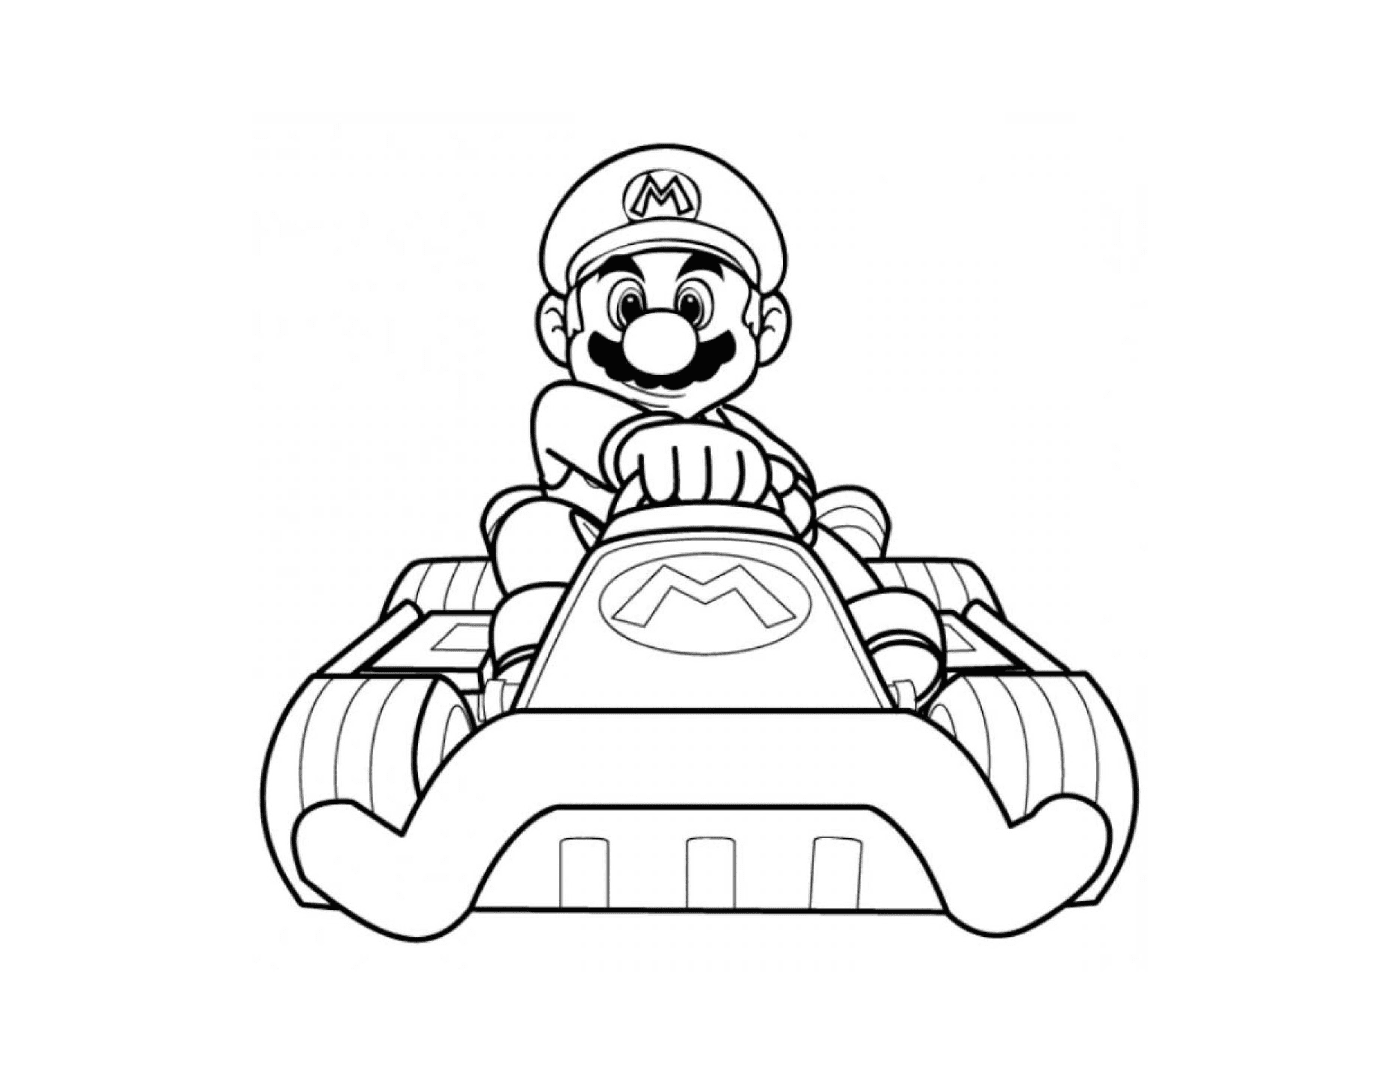  Марио Карт Уи со своей собственной машиной 